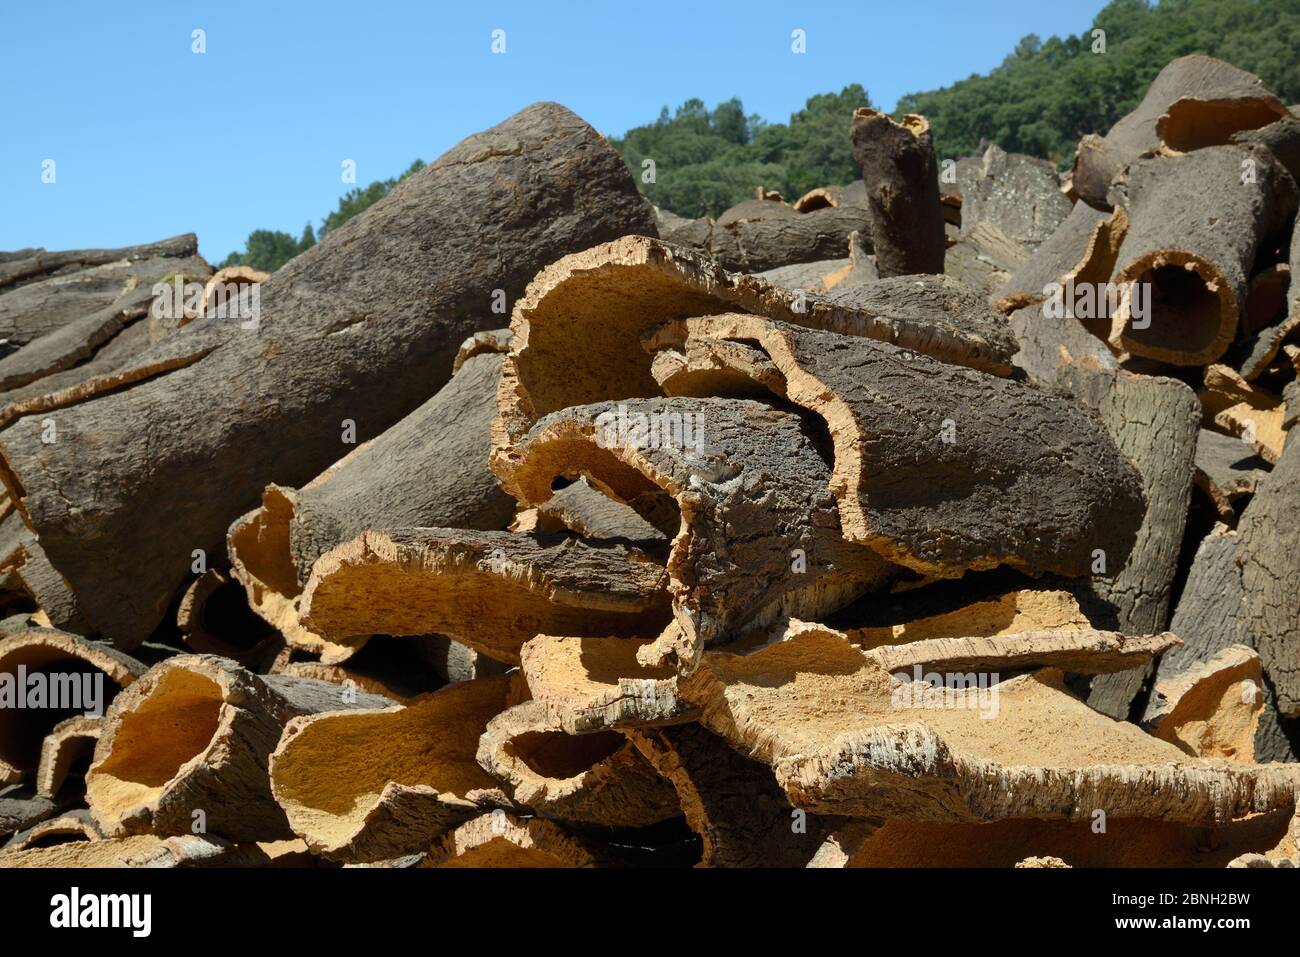 Korkeichenrinde frisch aus Korkeichenbäumen (Quercus suber) entfernt und zum Trocknen gestapelt, Monchique, Algarve, Portugal, August 2013. Stockfoto